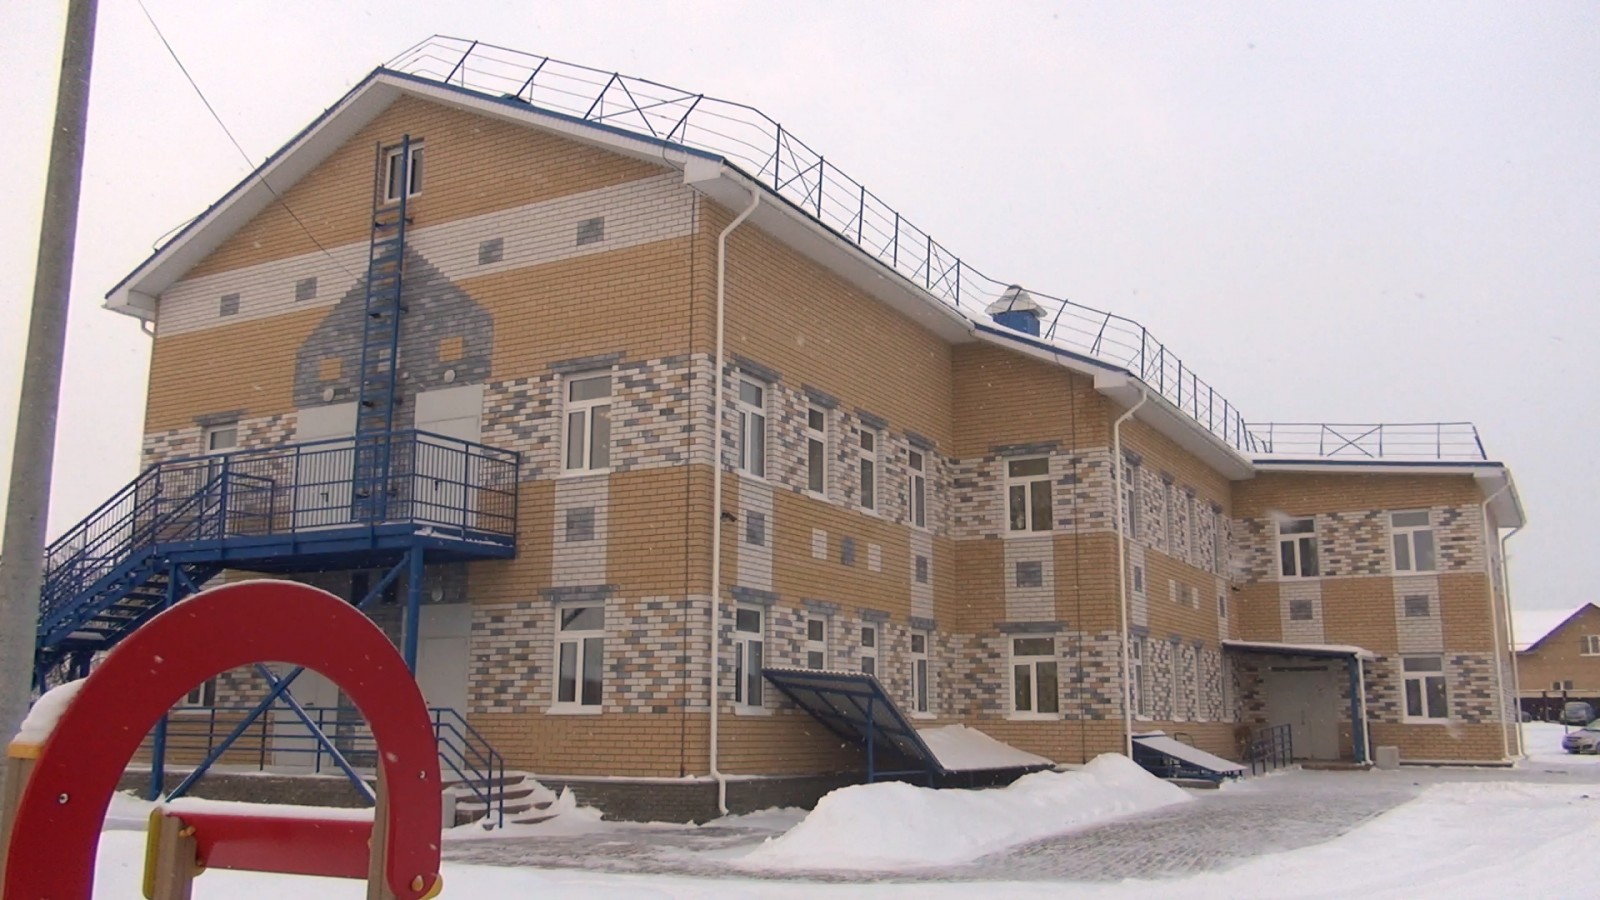 21 детский сад могут ввести в эксплуатацию до конца 2019 года в Нижегородской области - фото 1